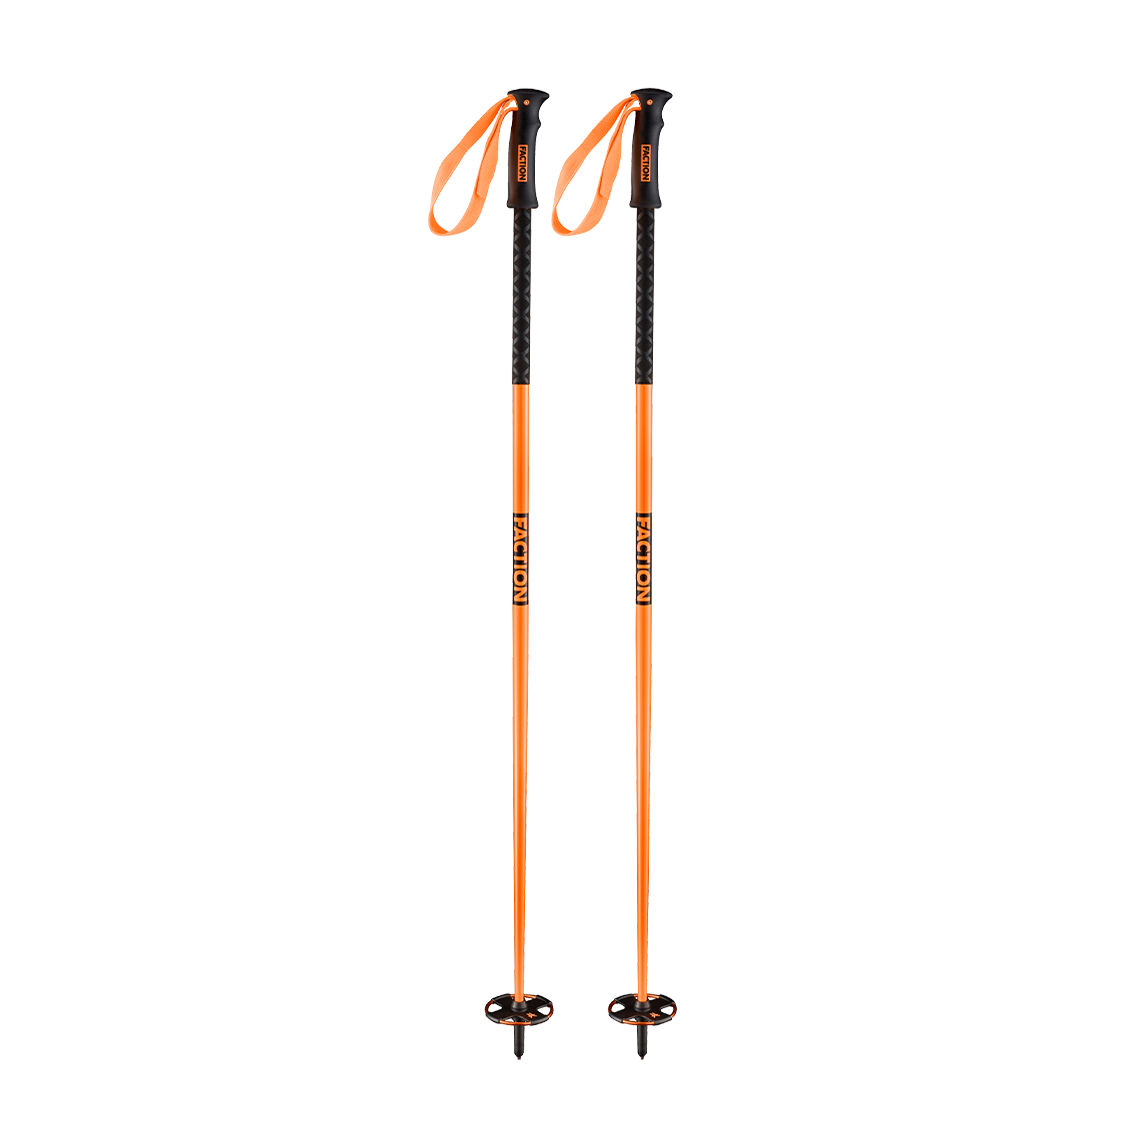 Faction Skis Orange Poles